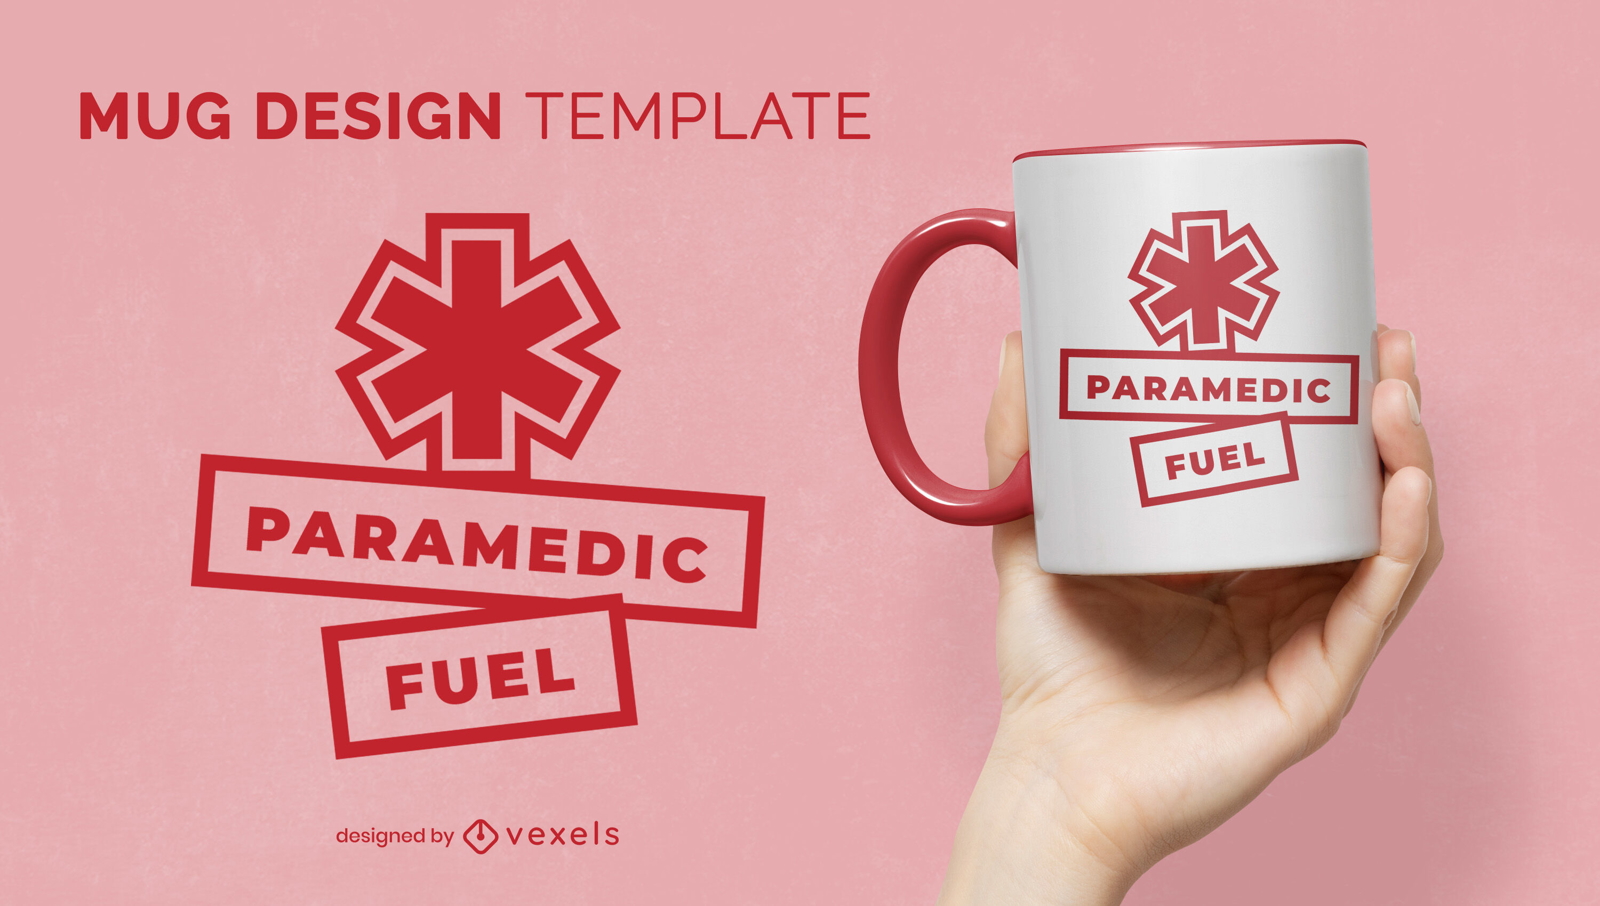 Paramedic fuel mug design